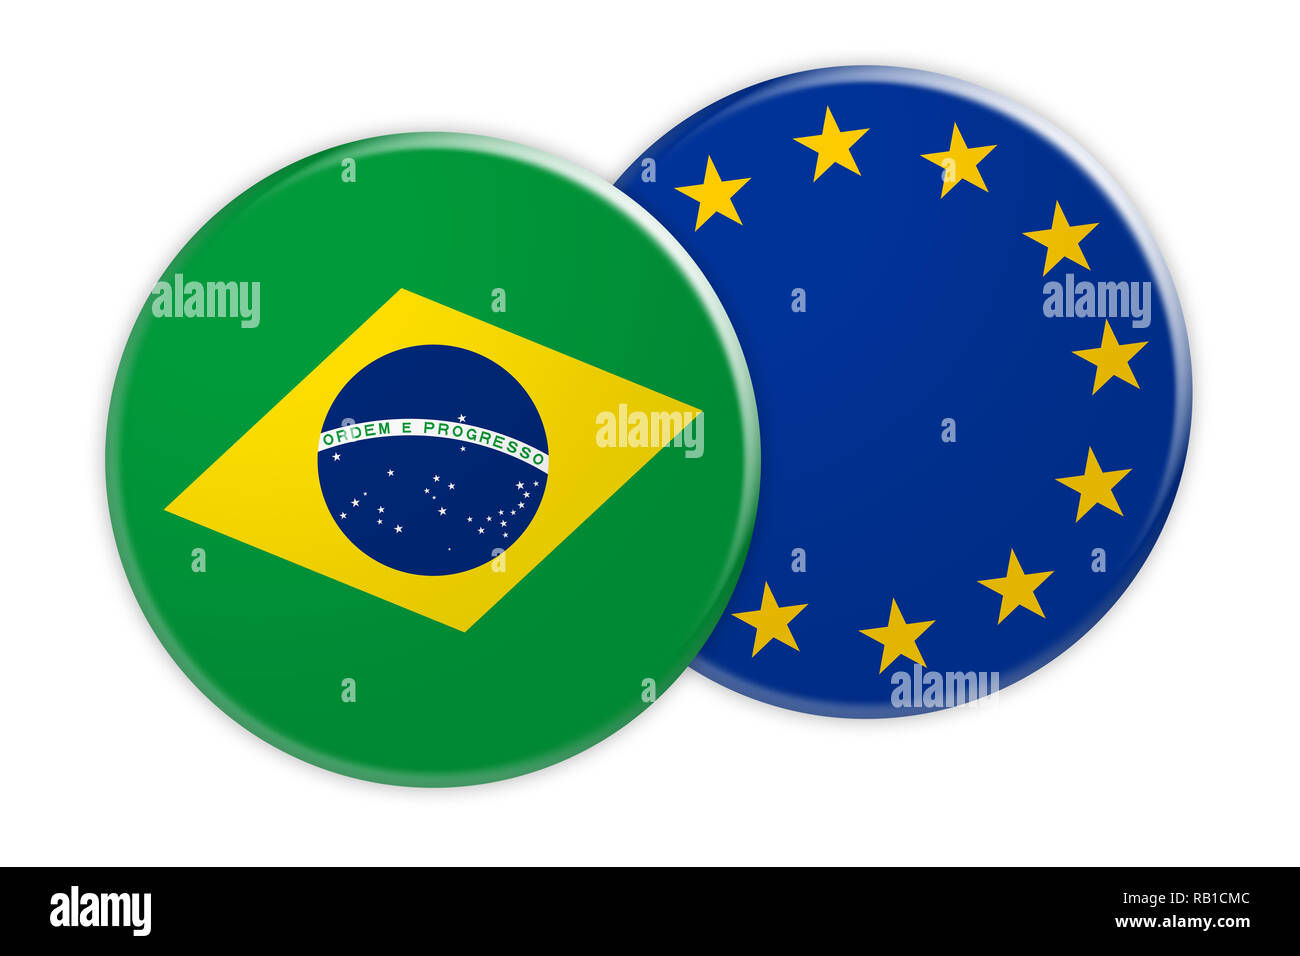 Bandera Brasil Ilustración Fondo Texturizado Símbolos Bandera Oficial Brasil  Ilustración de stock de ©Phiradet.c #361194774